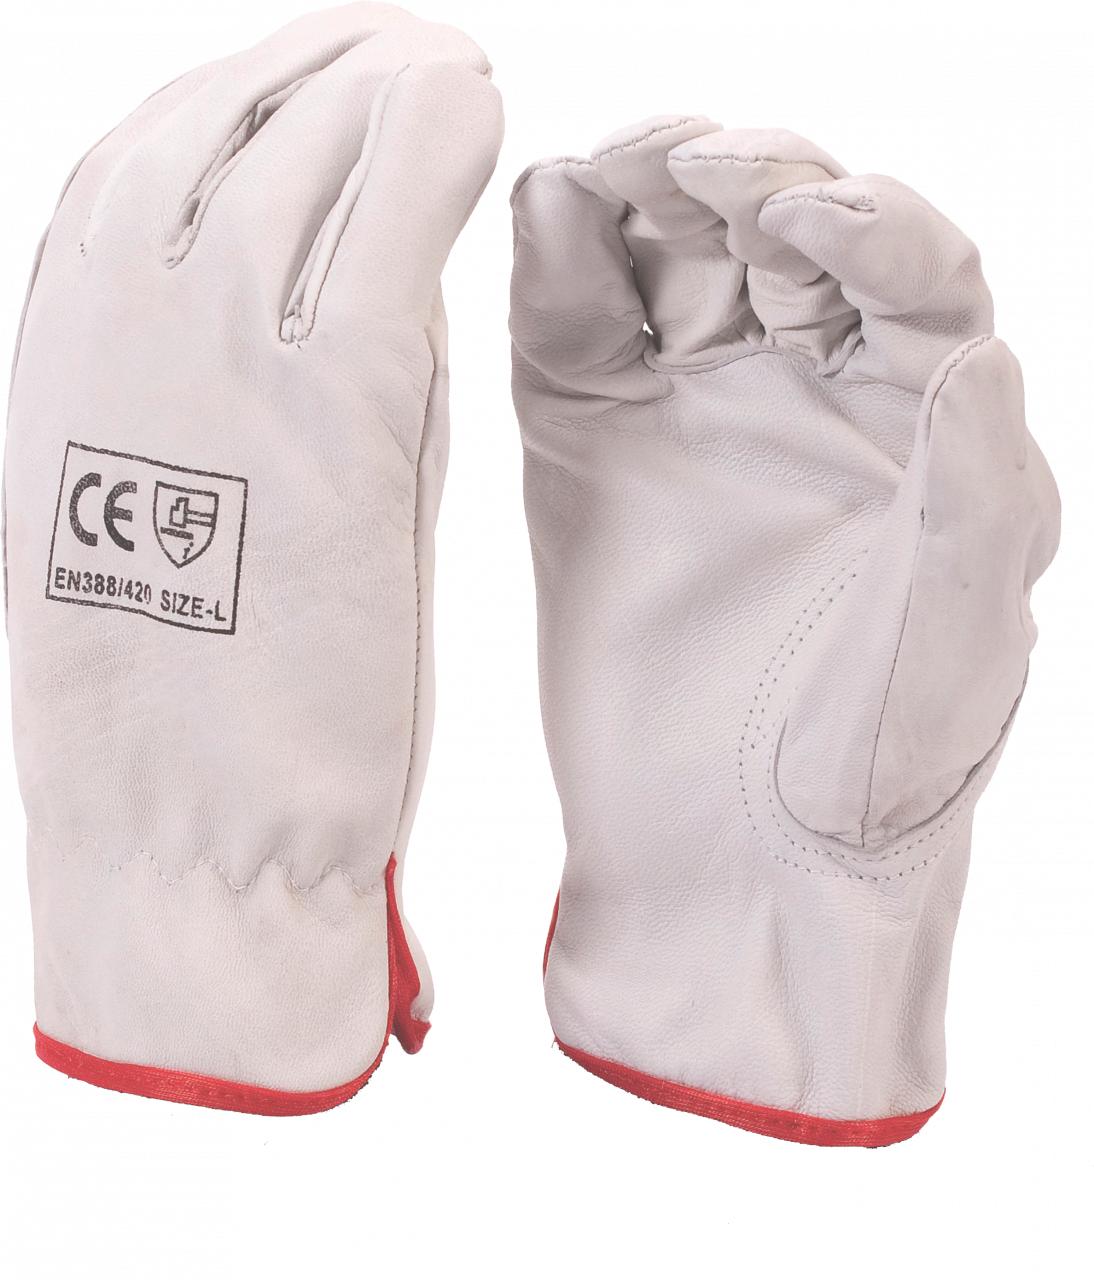 Leather Glove Vipweld Khaki/Stone Thumb Xl